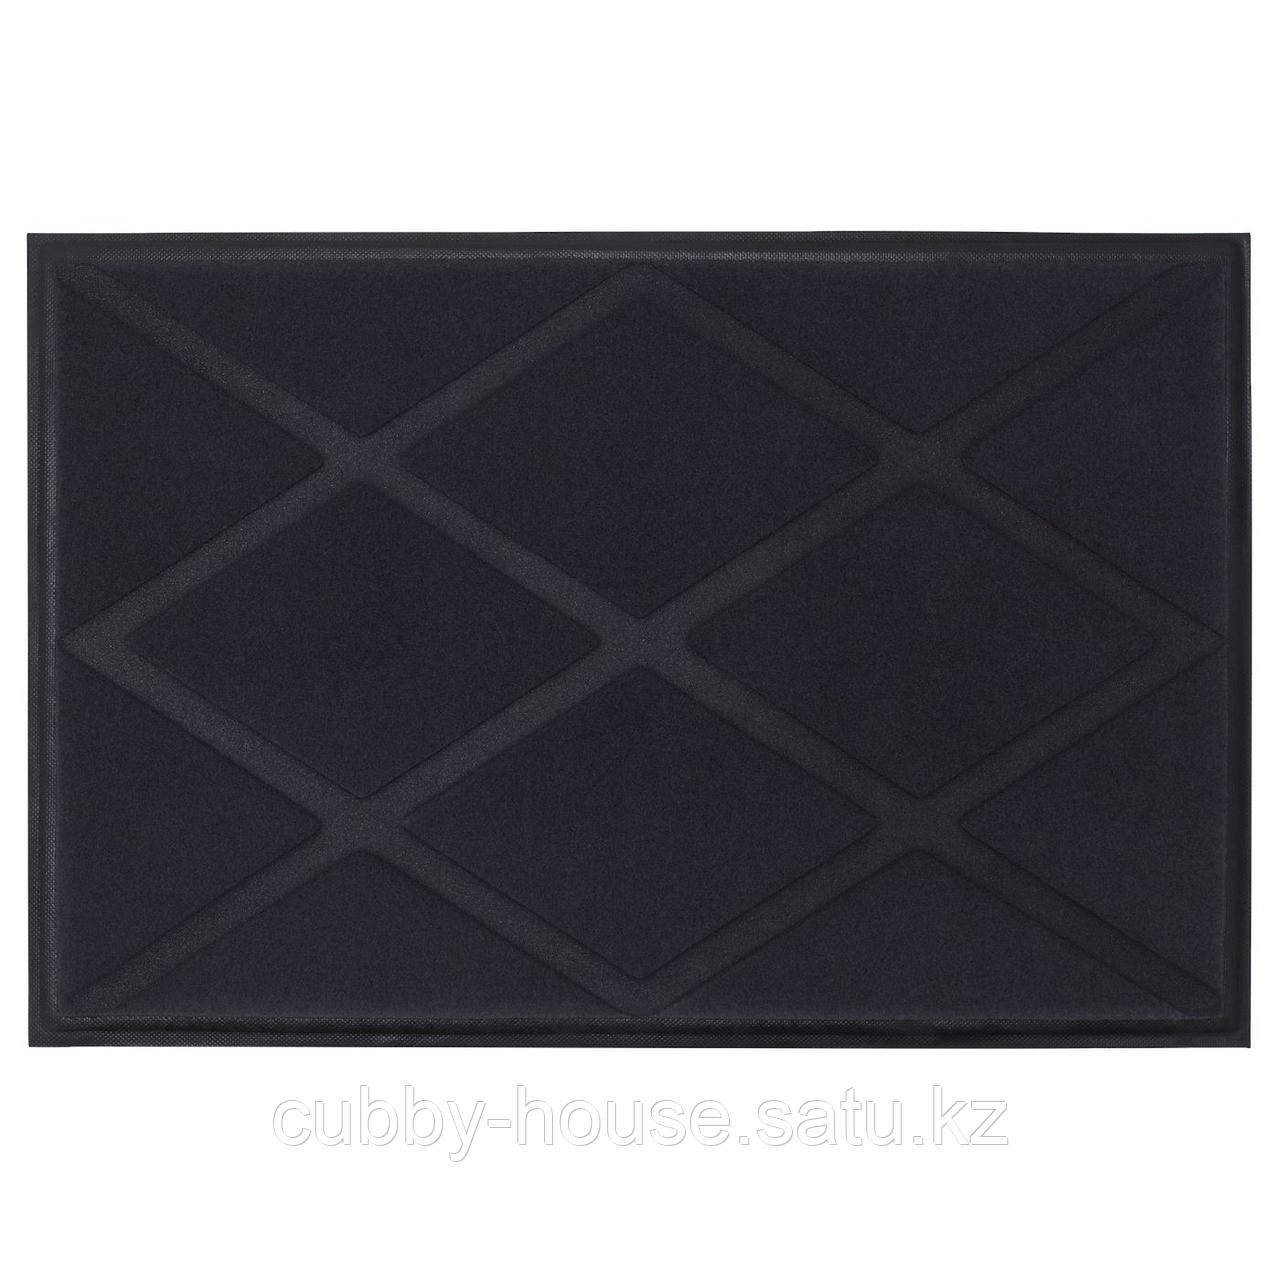 ОКСБИ Придверный коврик, серый, 60x90 см